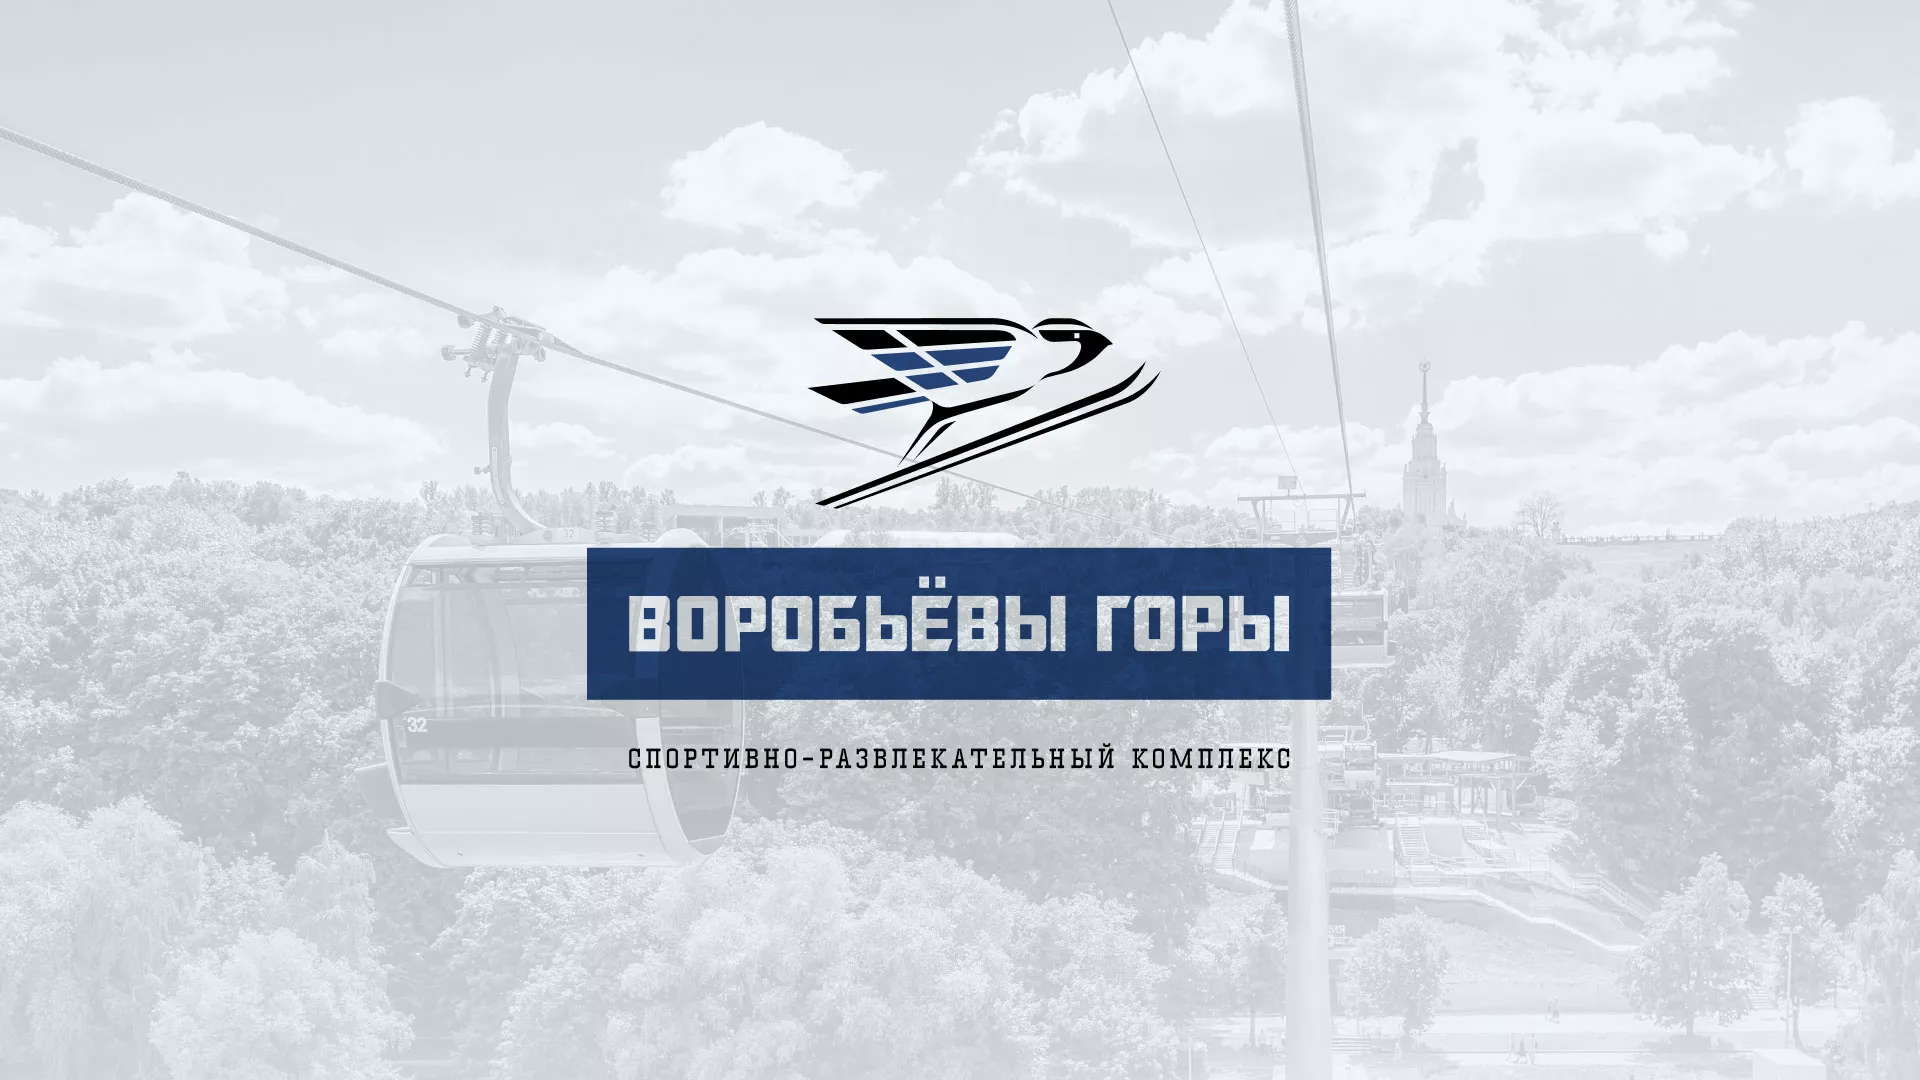 Разработка сайта в Конаково для спортивно-развлекательного комплекса «Воробьёвы горы»